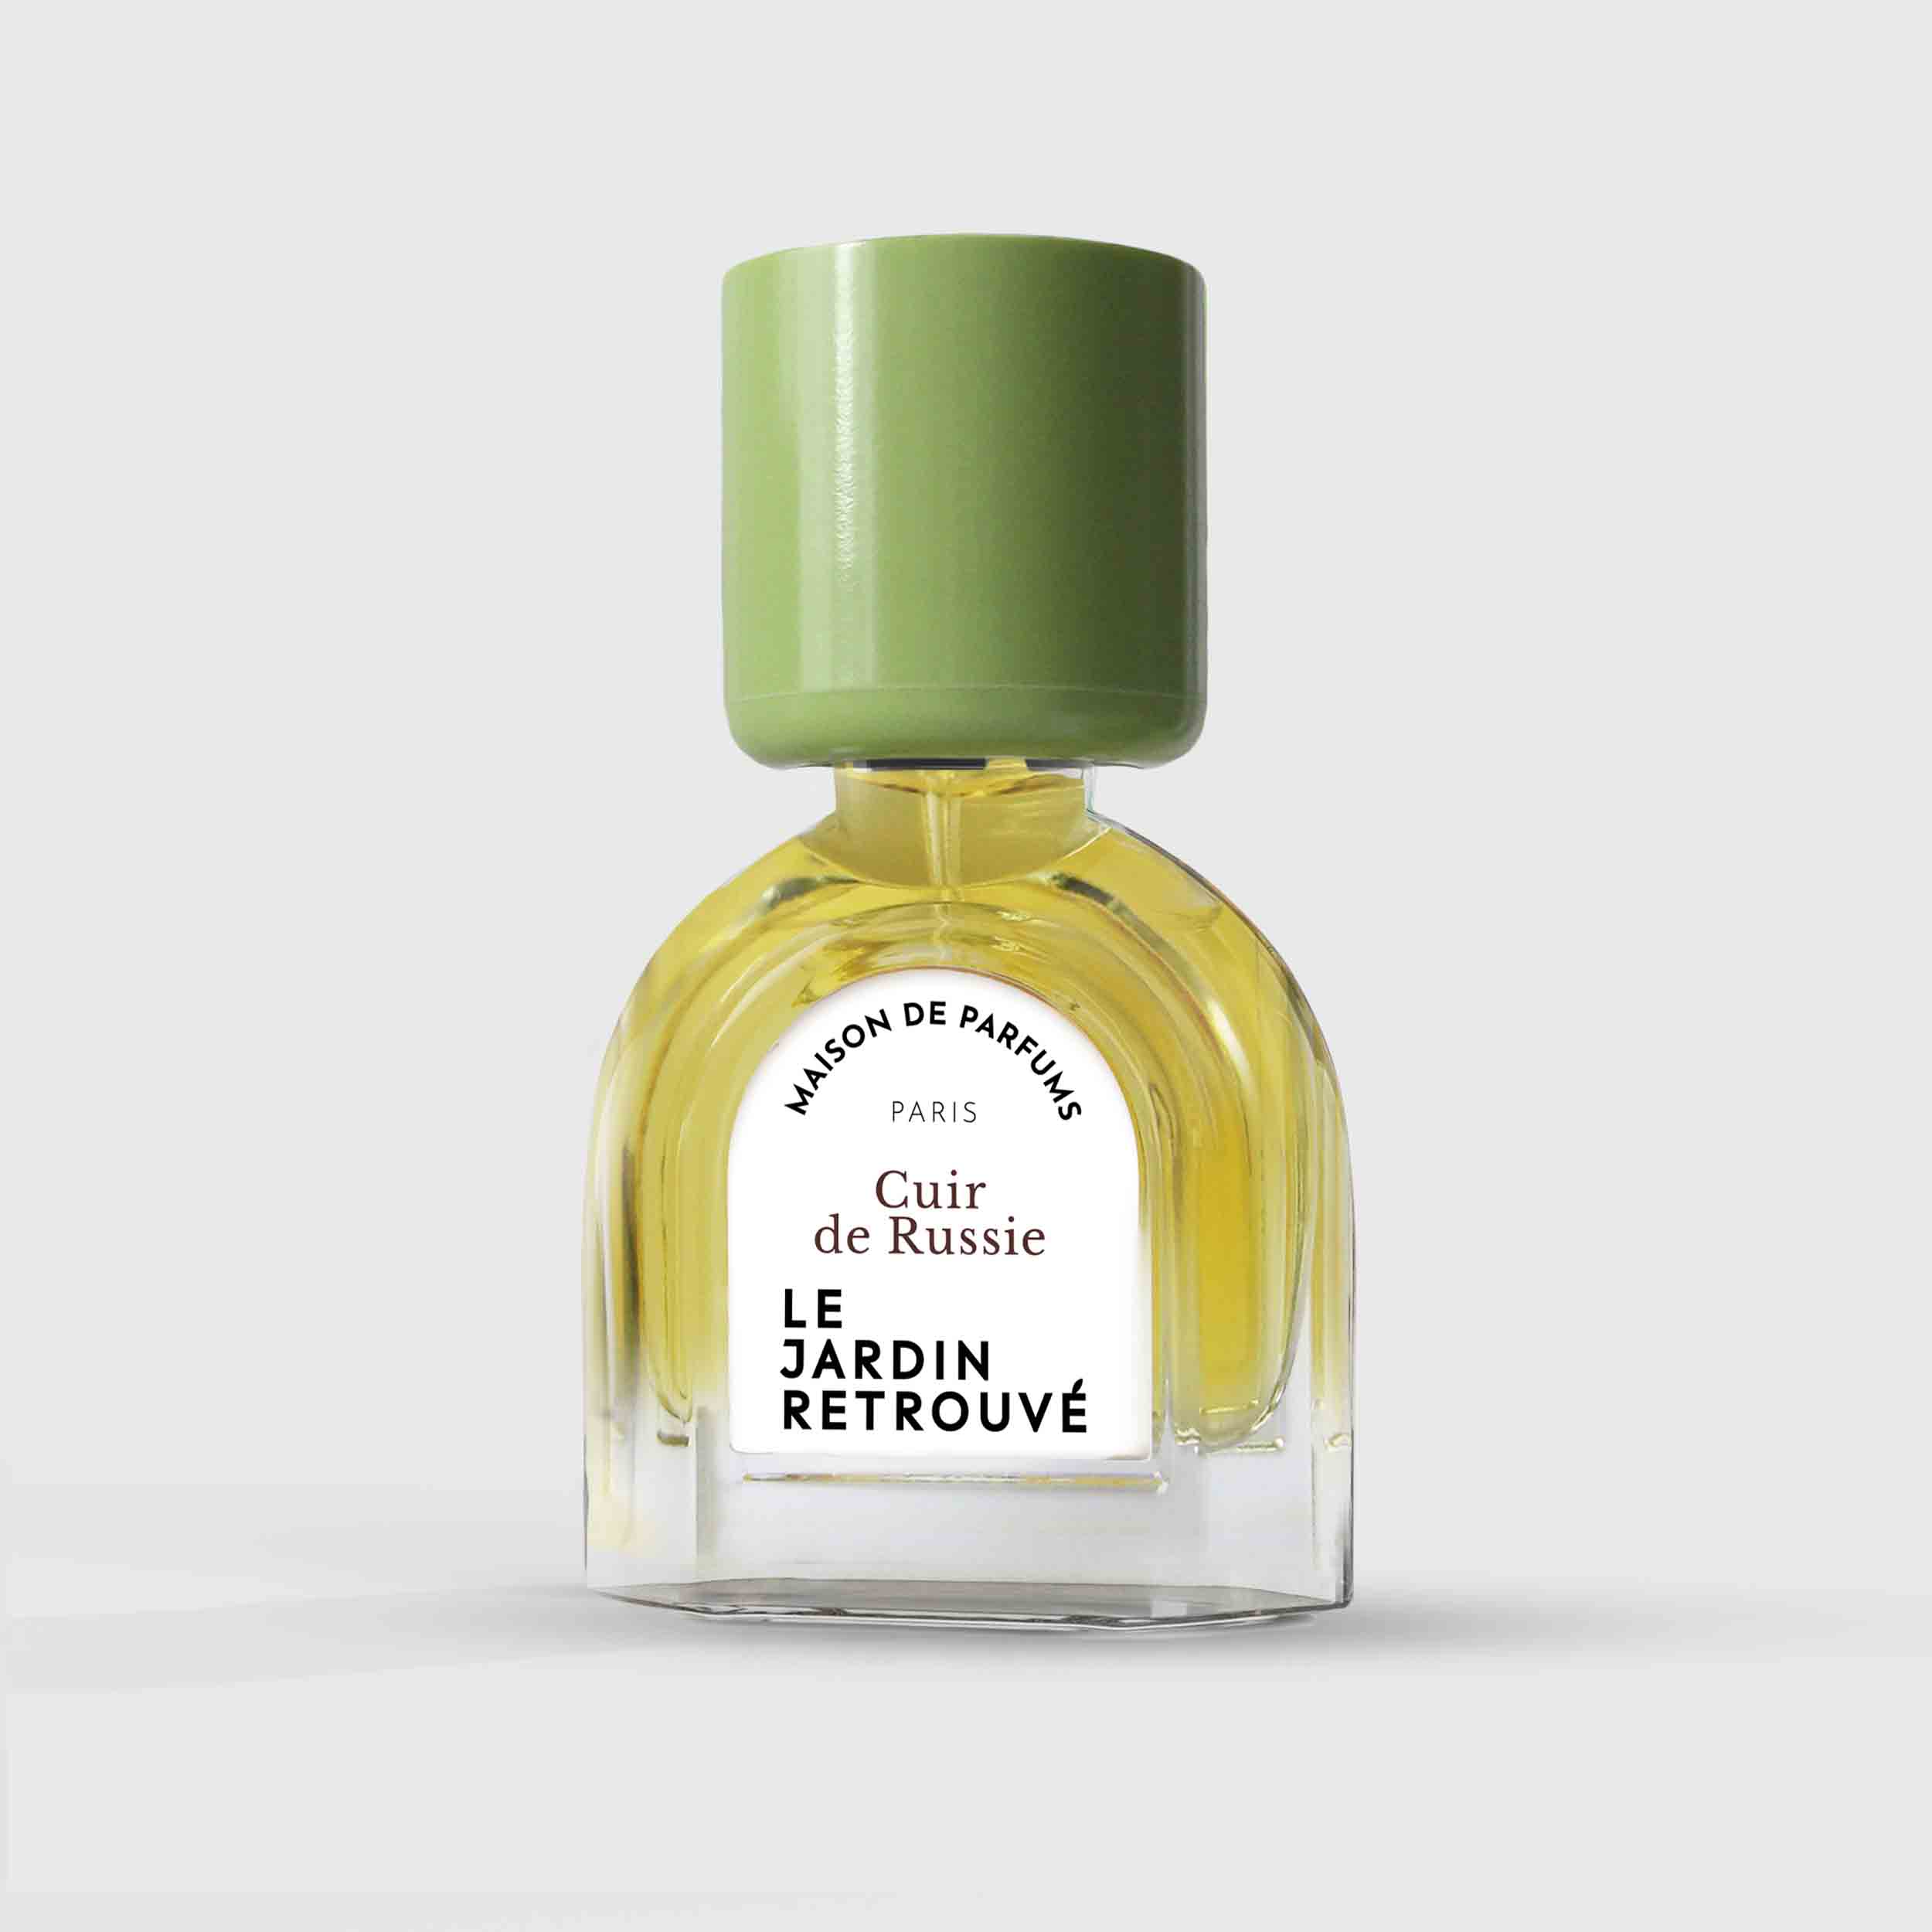 Cuir de Russie Eau de Parfum 15ml Bottle by Le Jardin Retrouvé